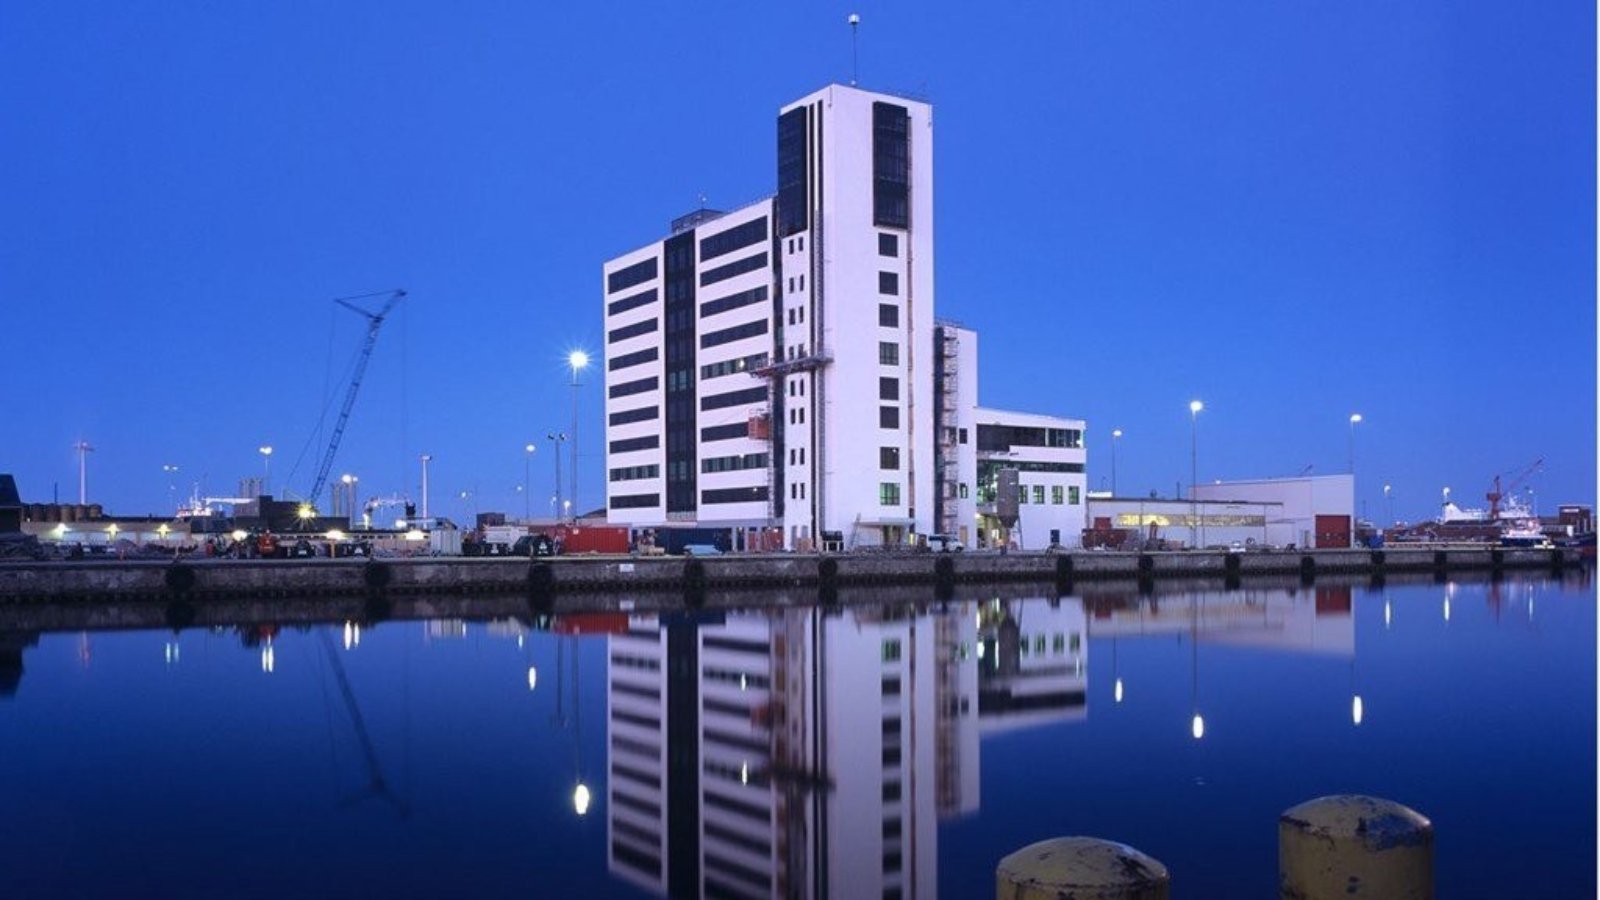 Wilhelmsen's new office building in Frederikshavn, Denmark.